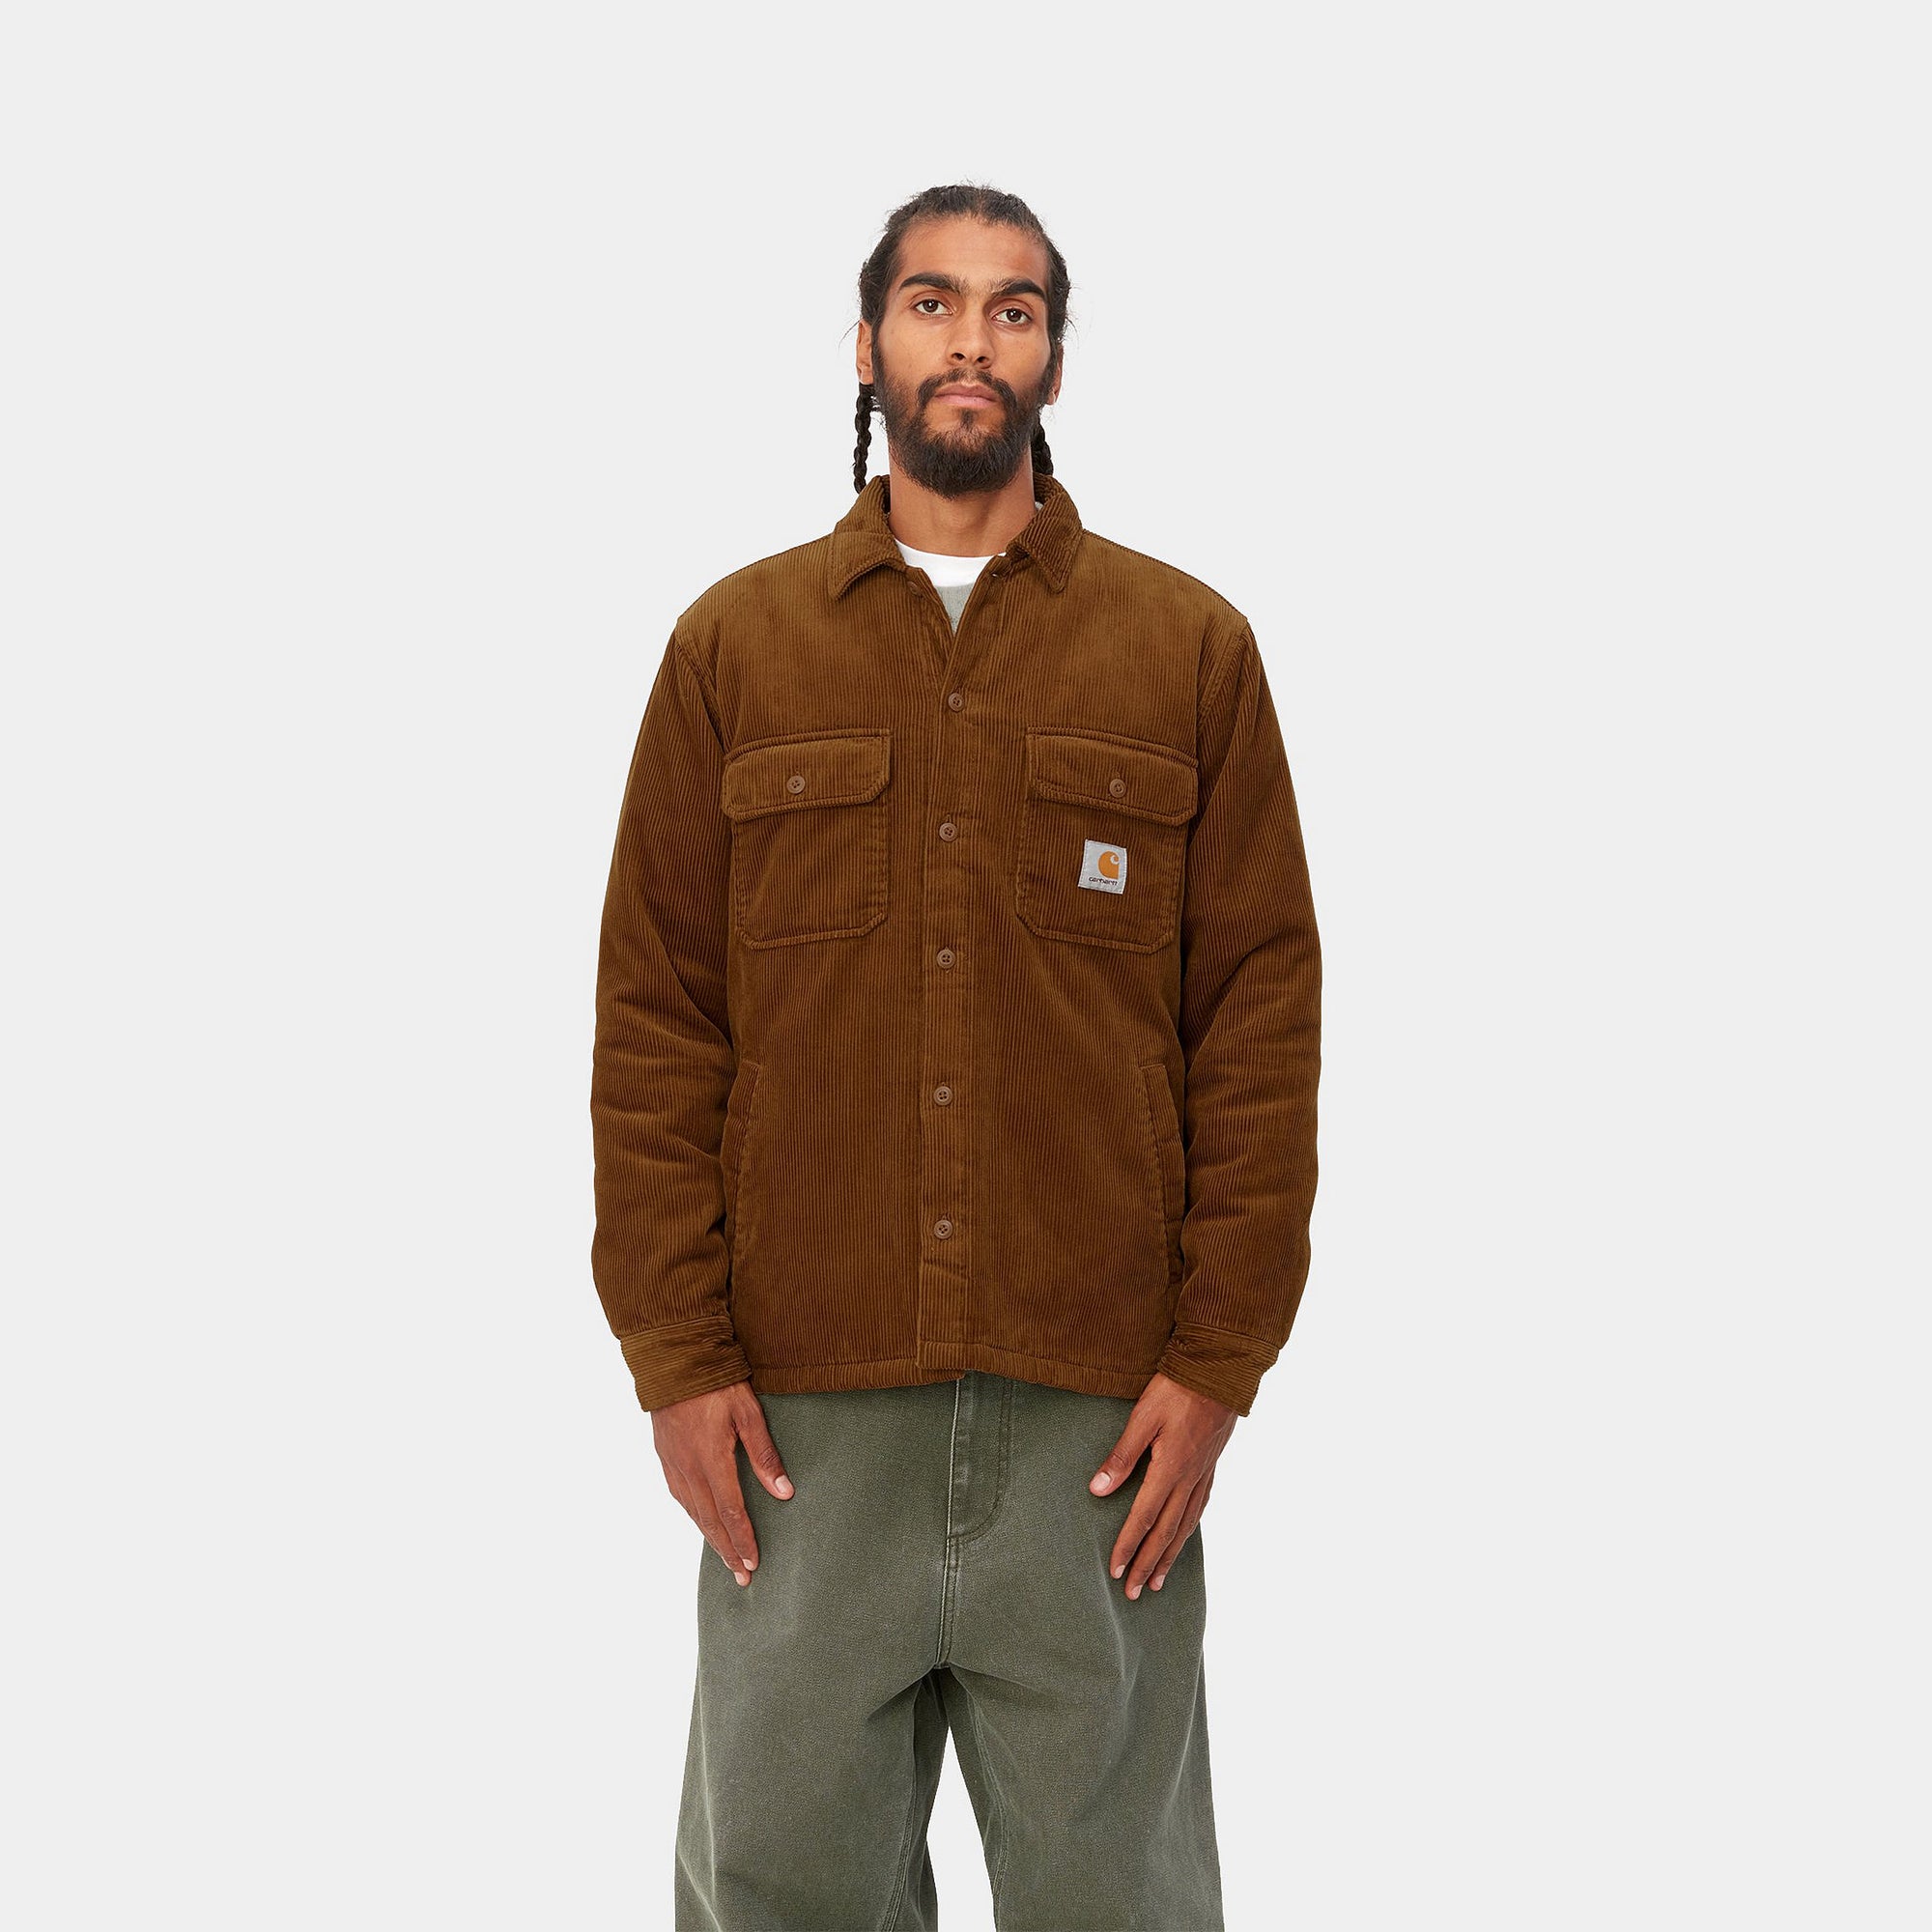 ウィットサムシャツジャケット | カーハート公式通販 - Carhartt WIP Japan